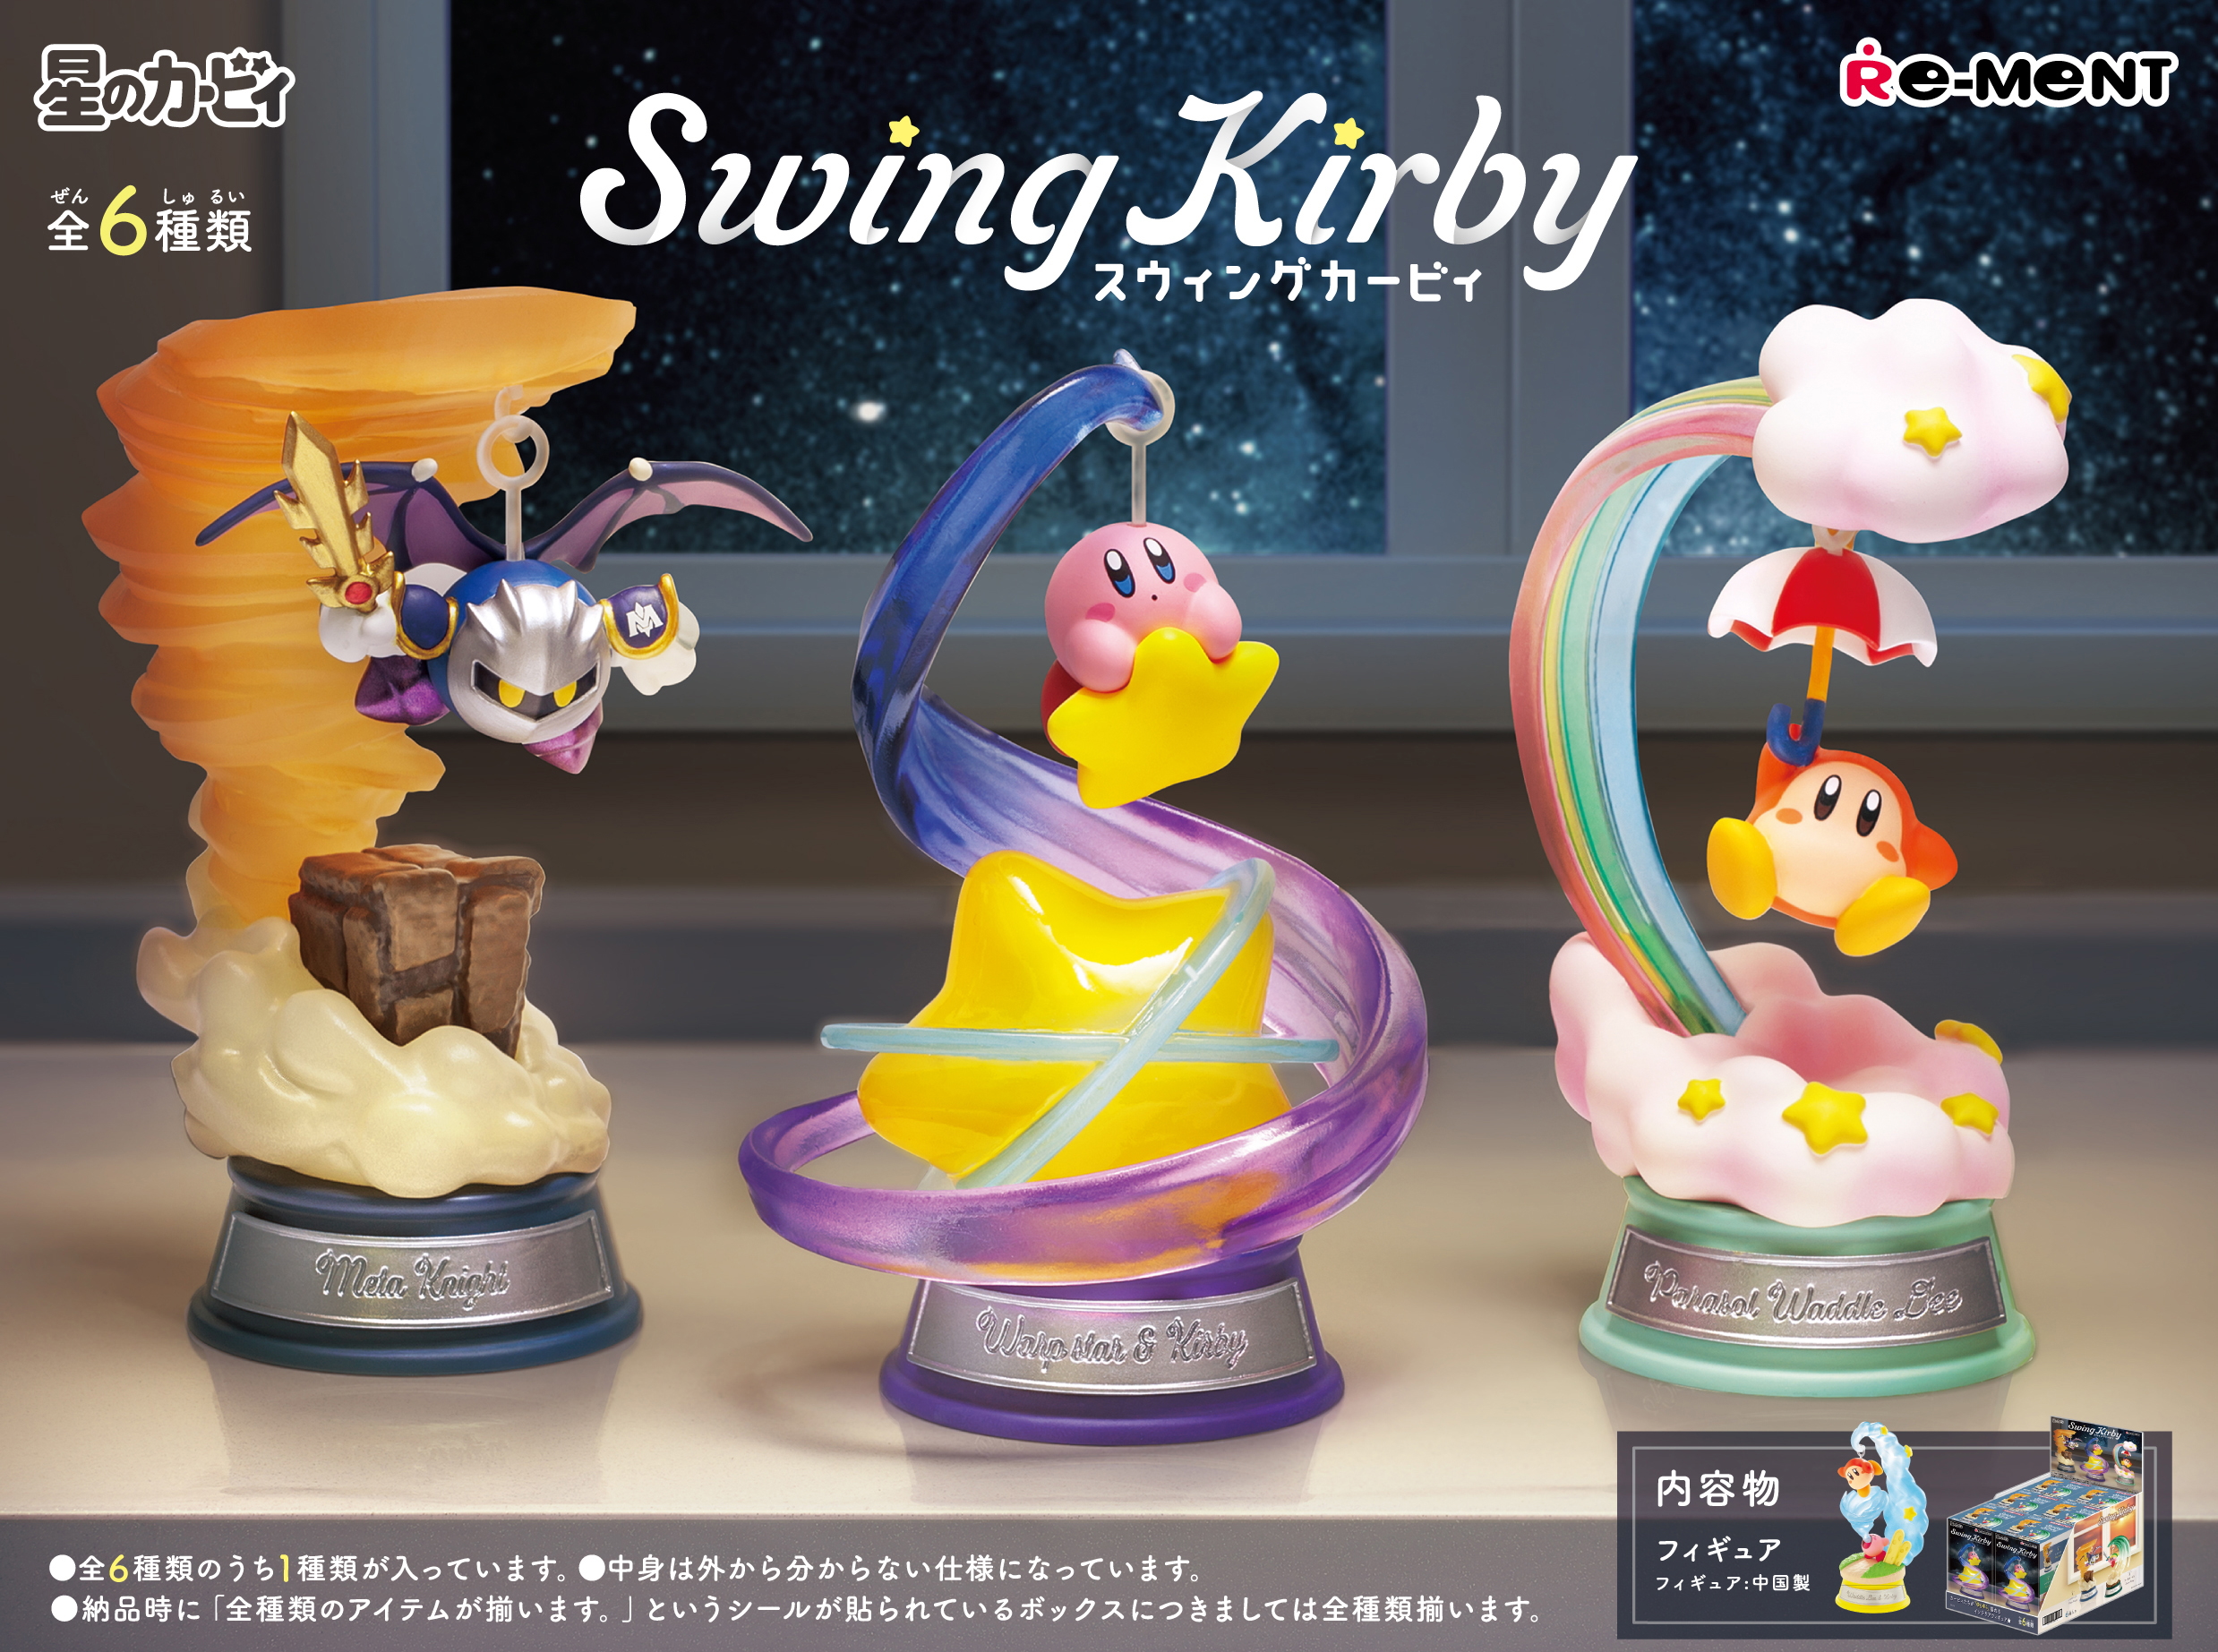 人気 リーメント 星のカービィ Swing Kirby in Dream Land BOX 全6種類